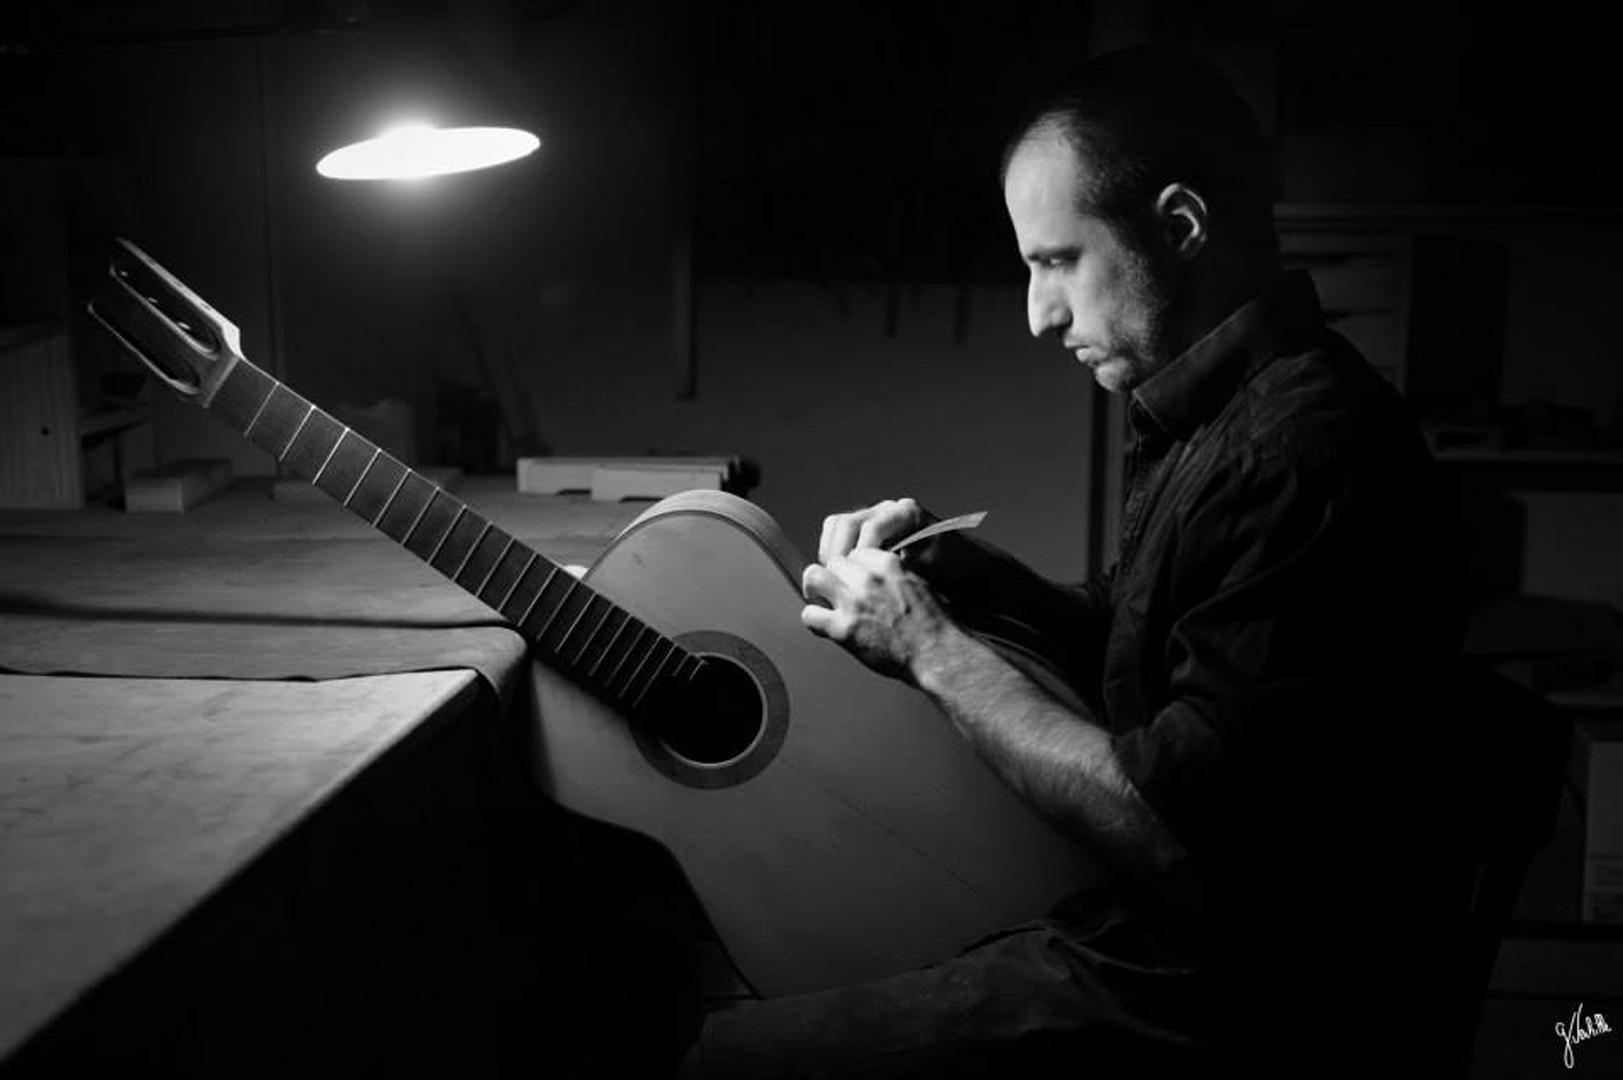 portrait artisan luthier guitare noir et blanc photographe marseille germain verhille